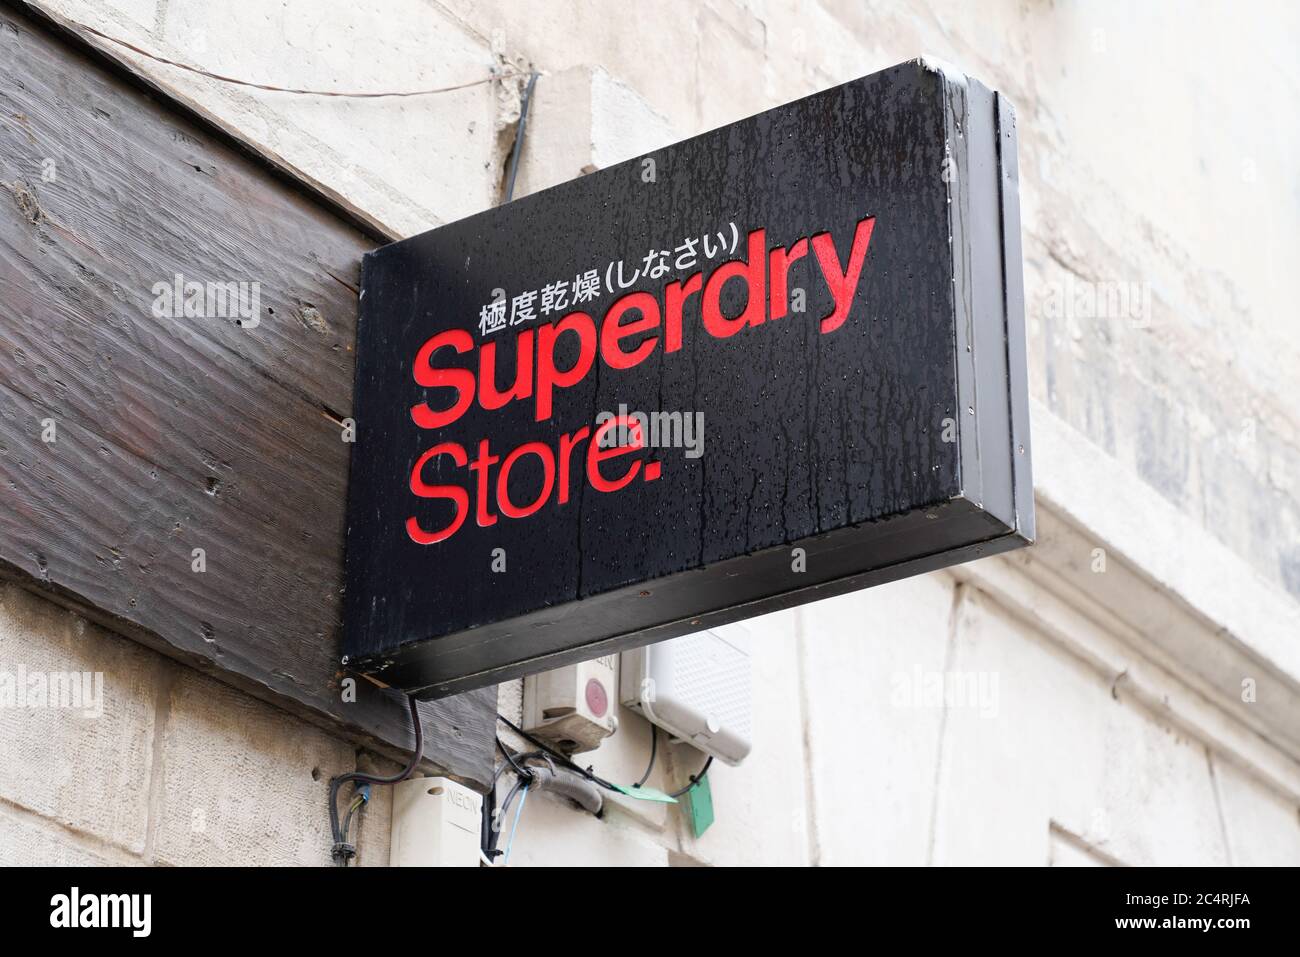 Bordeaux , Aquitaine / Francia - 06 20 2020 : Superdry segno negozio di abbigliamento a marchio UK azienda di negozi di abbigliamento Foto Stock